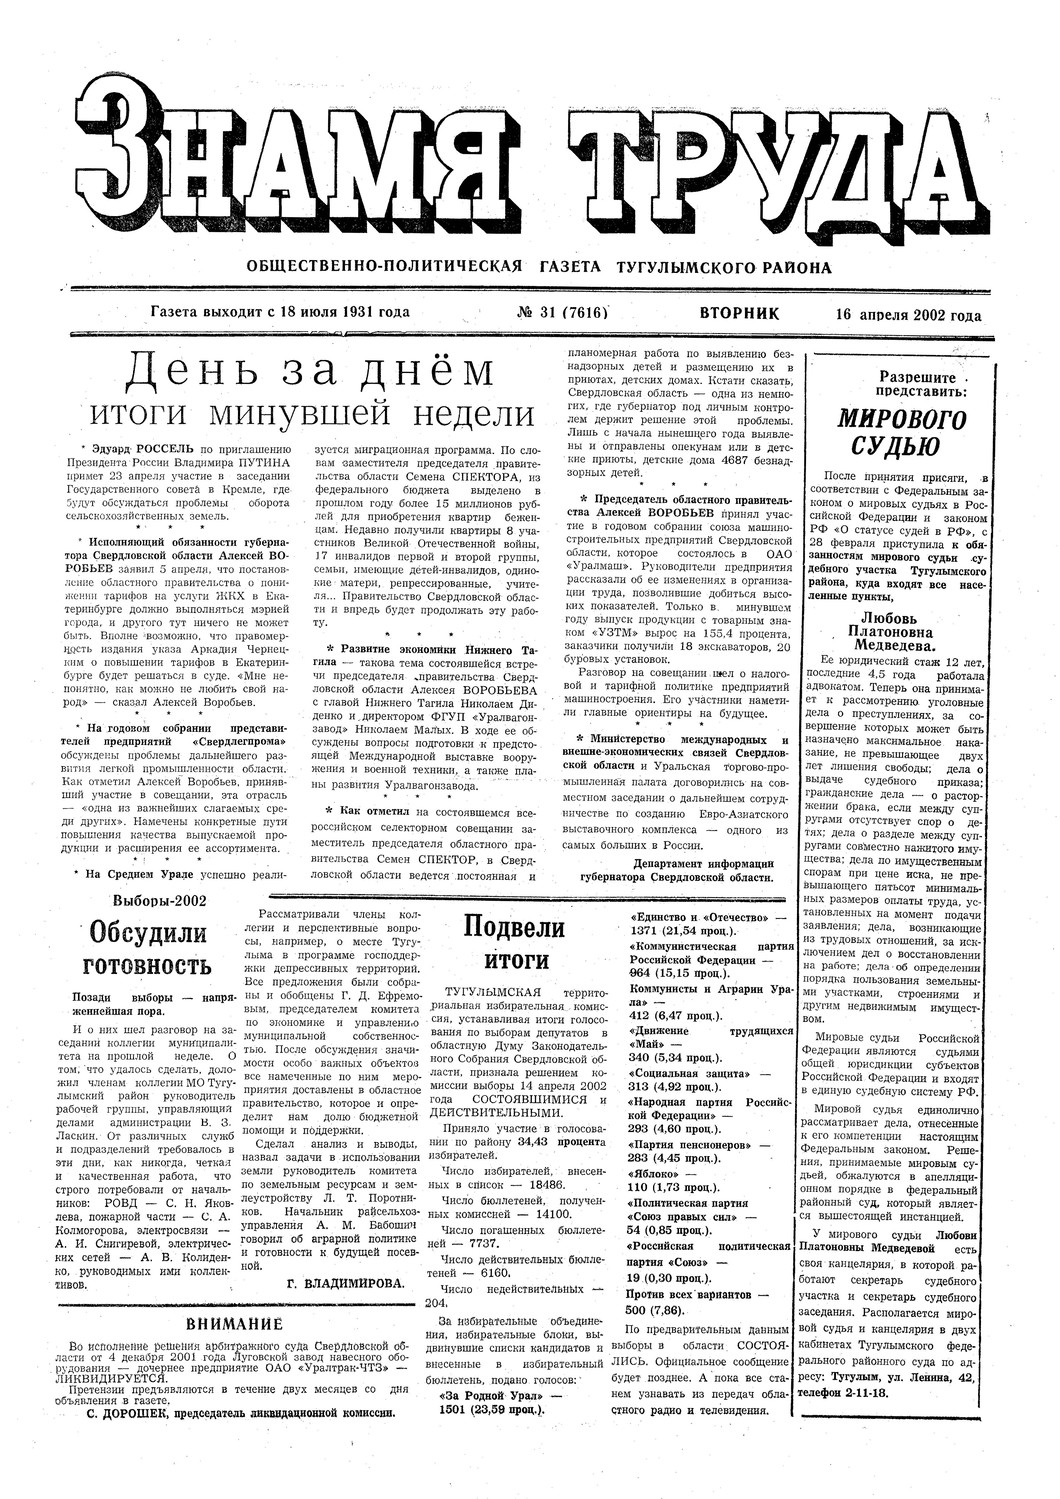 Знамя труда №31 от 16 апреля 2002г.